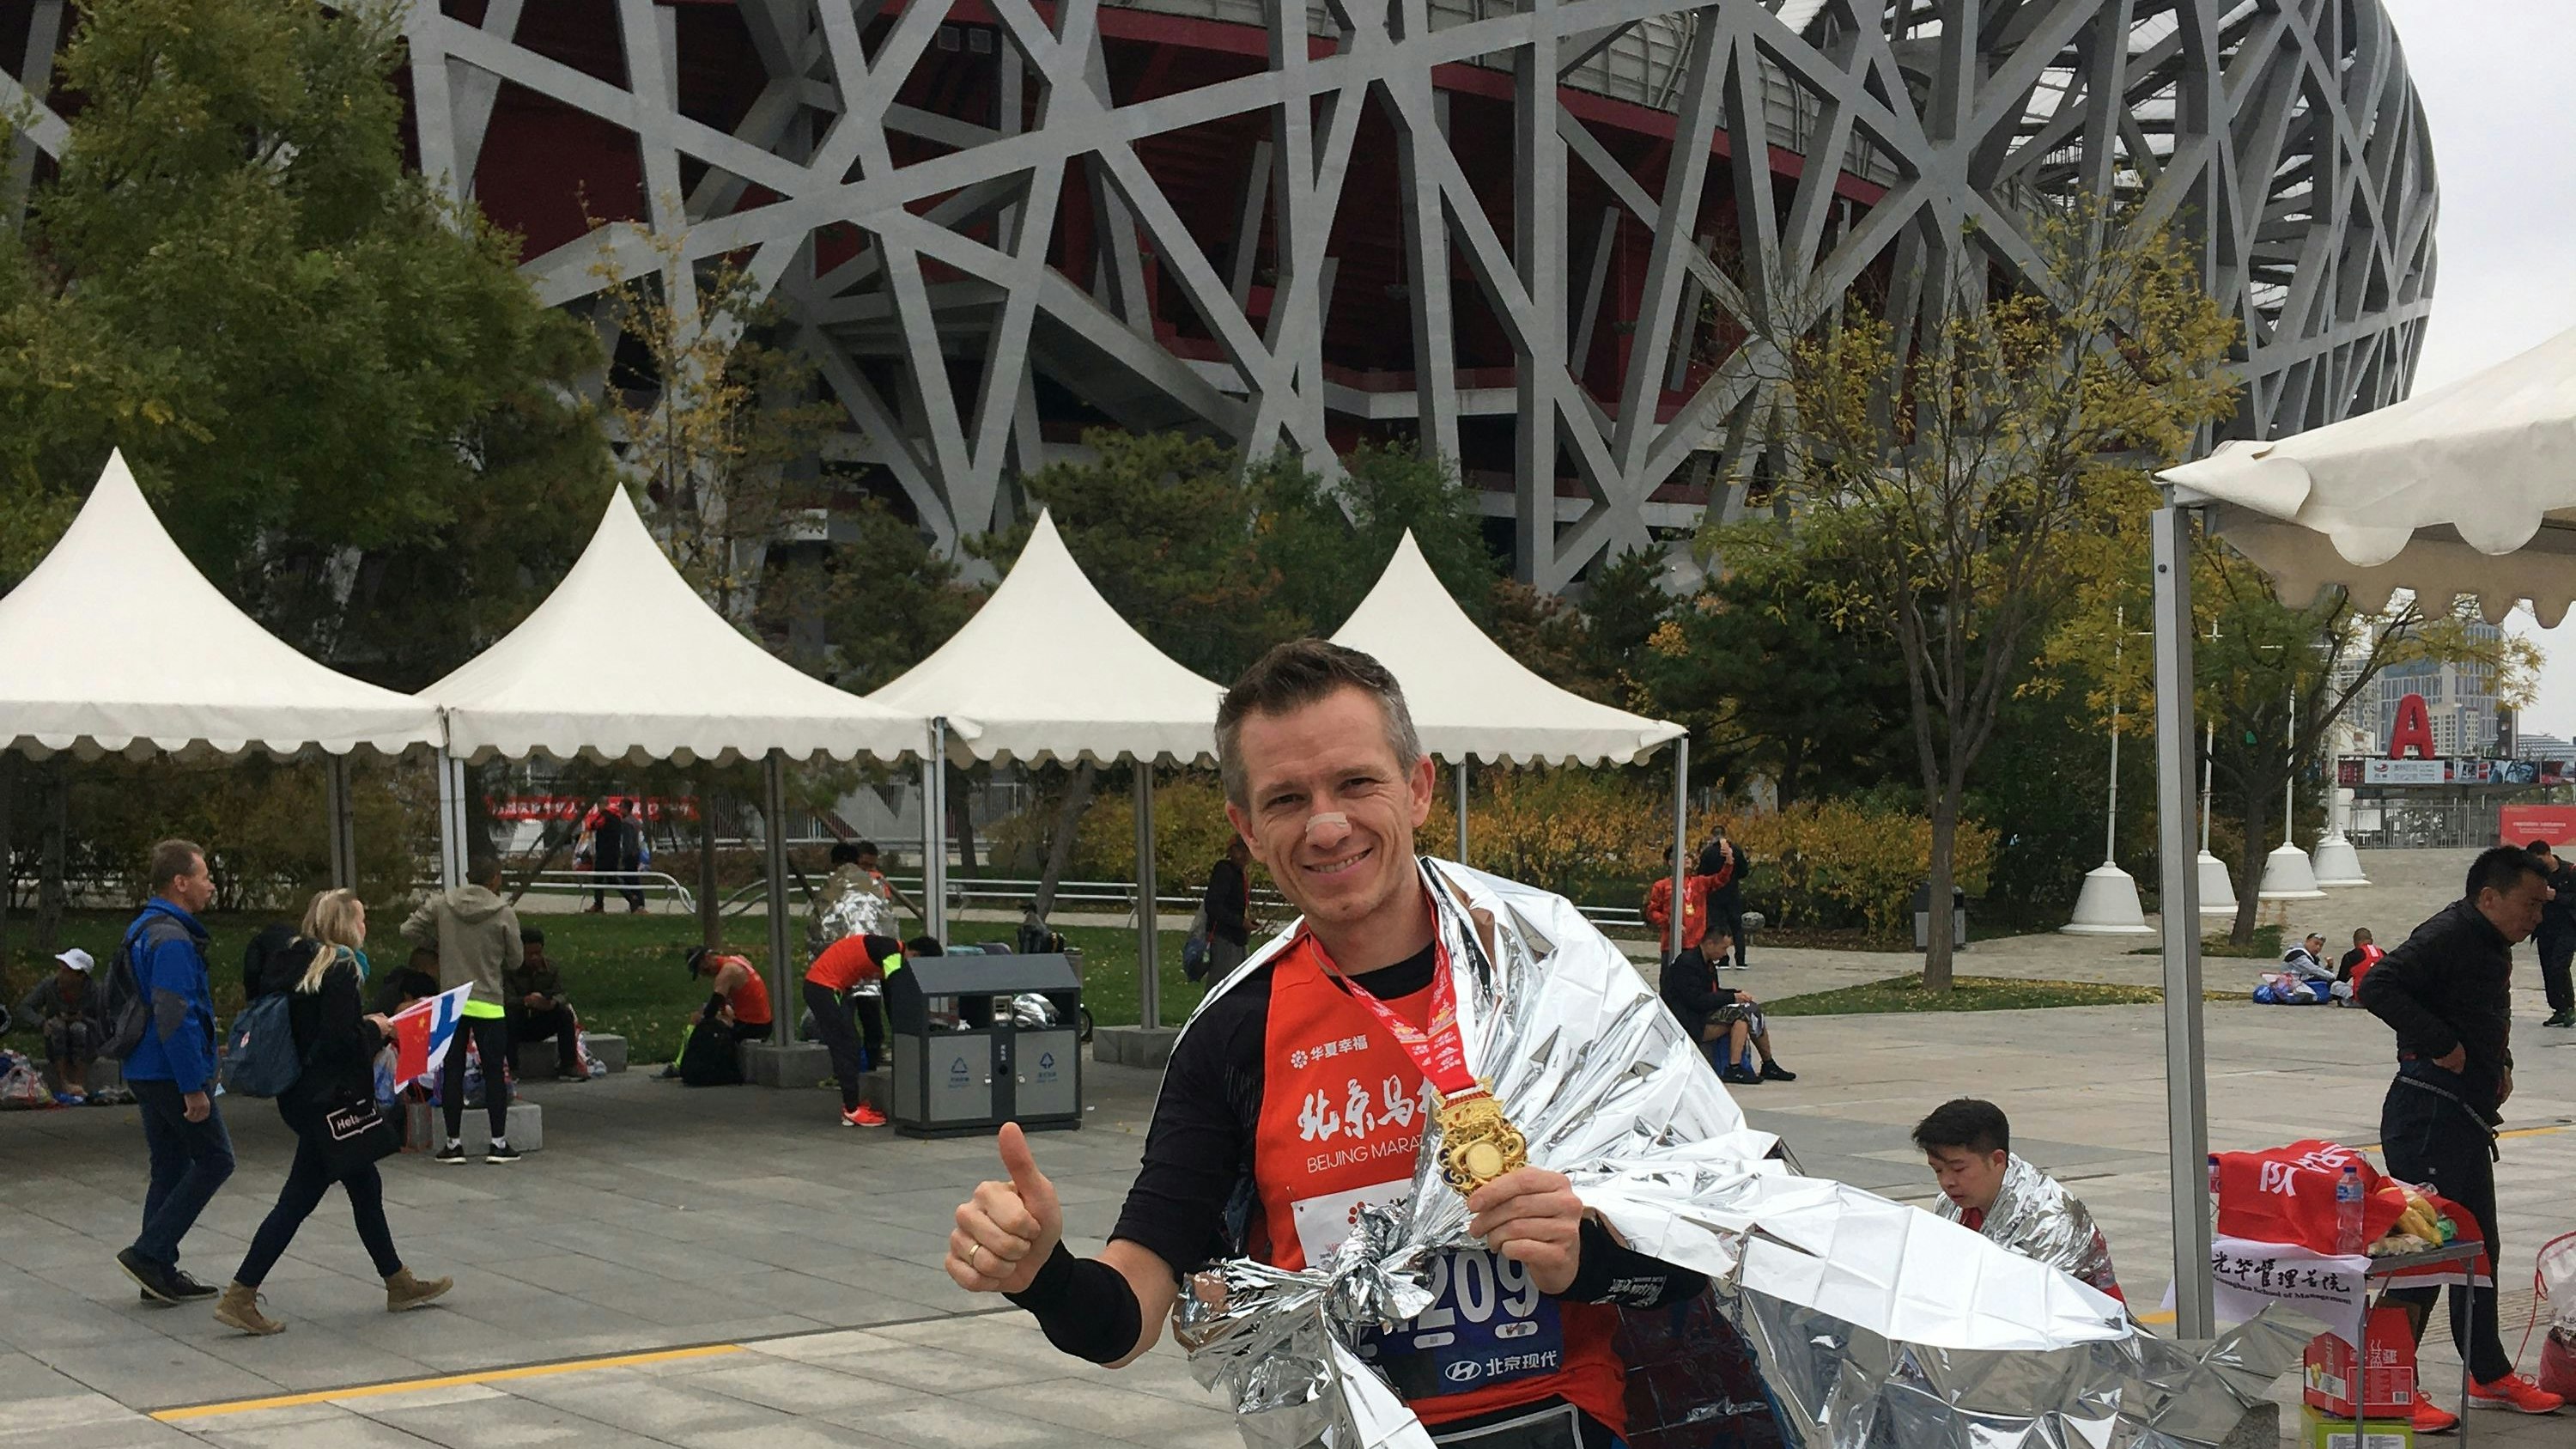 Geschafft: Karl Kicker vor dem Olympiastadion (Vogelnest) in Peking nach dem Peking-Marathon im Jahr 2019. Foto: Karl Kicker.